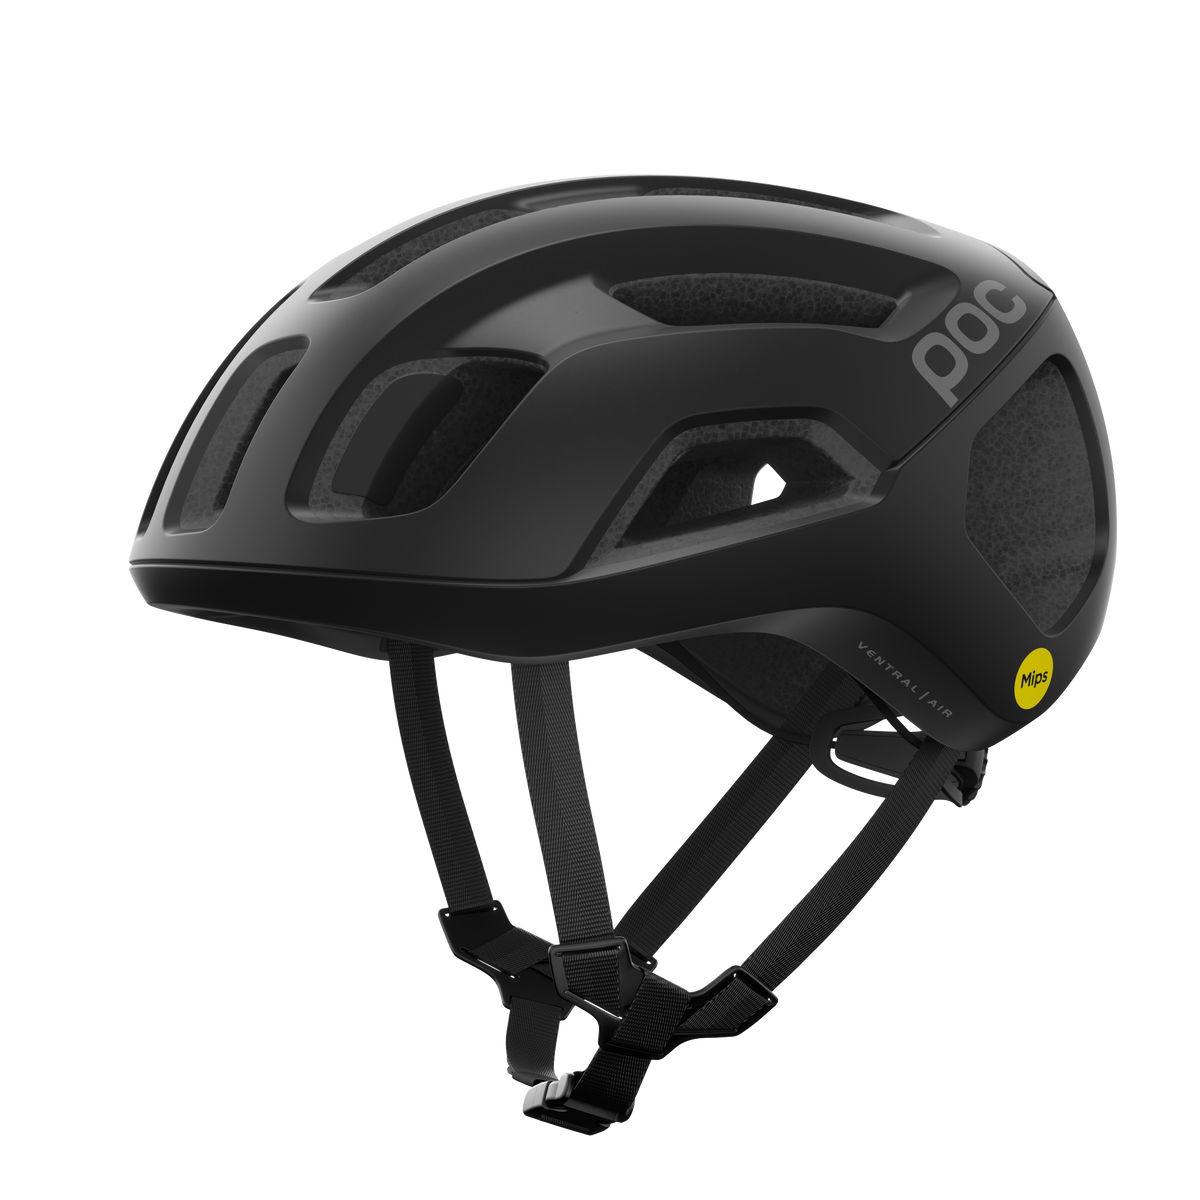 POC Ventral Air Road Cycling Helmet (Uranium Black Matt)